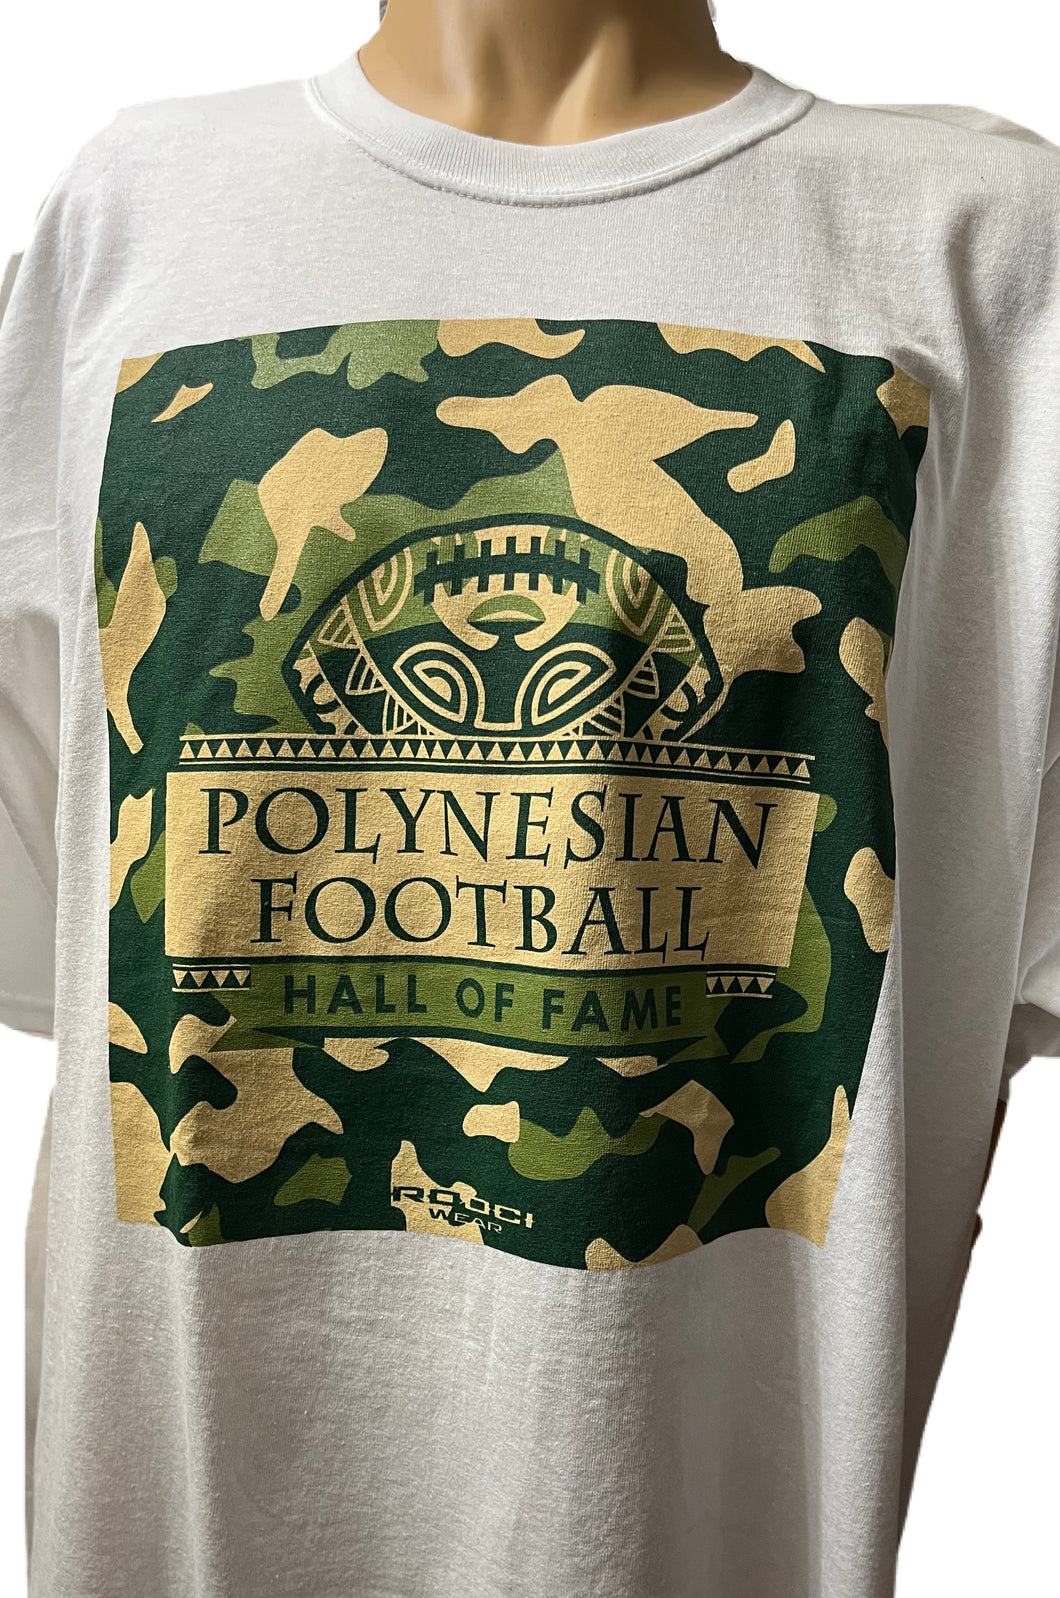 Polynesian Football Hall of Fame T-shirt